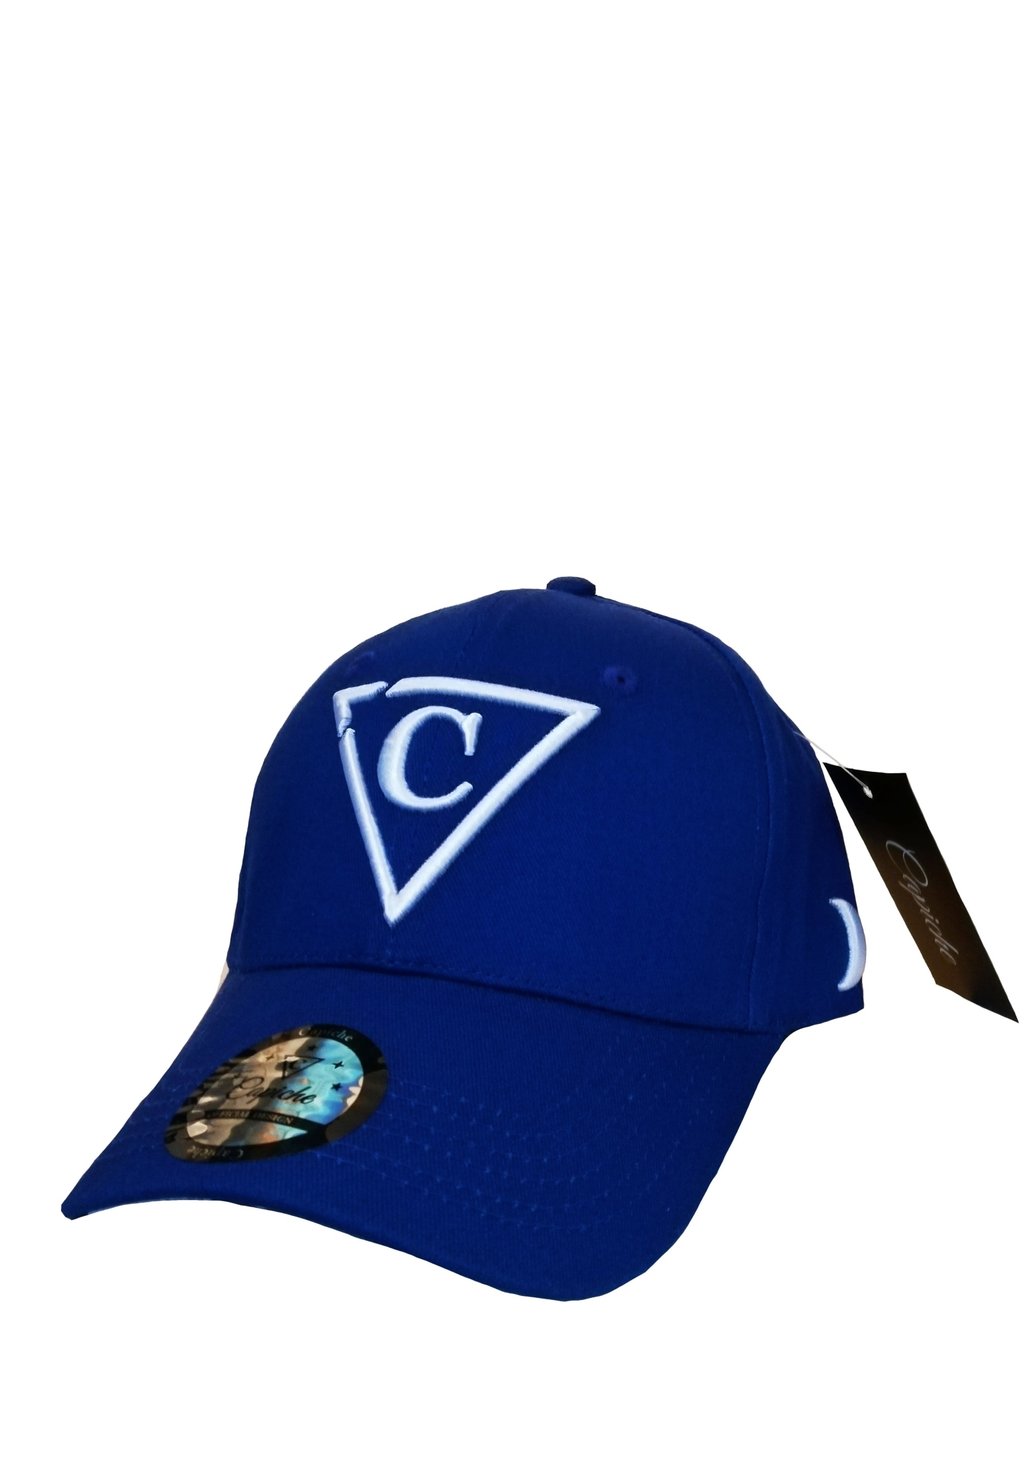 Бейсболка CURVED Capiche, цвет blue black white цена и фото